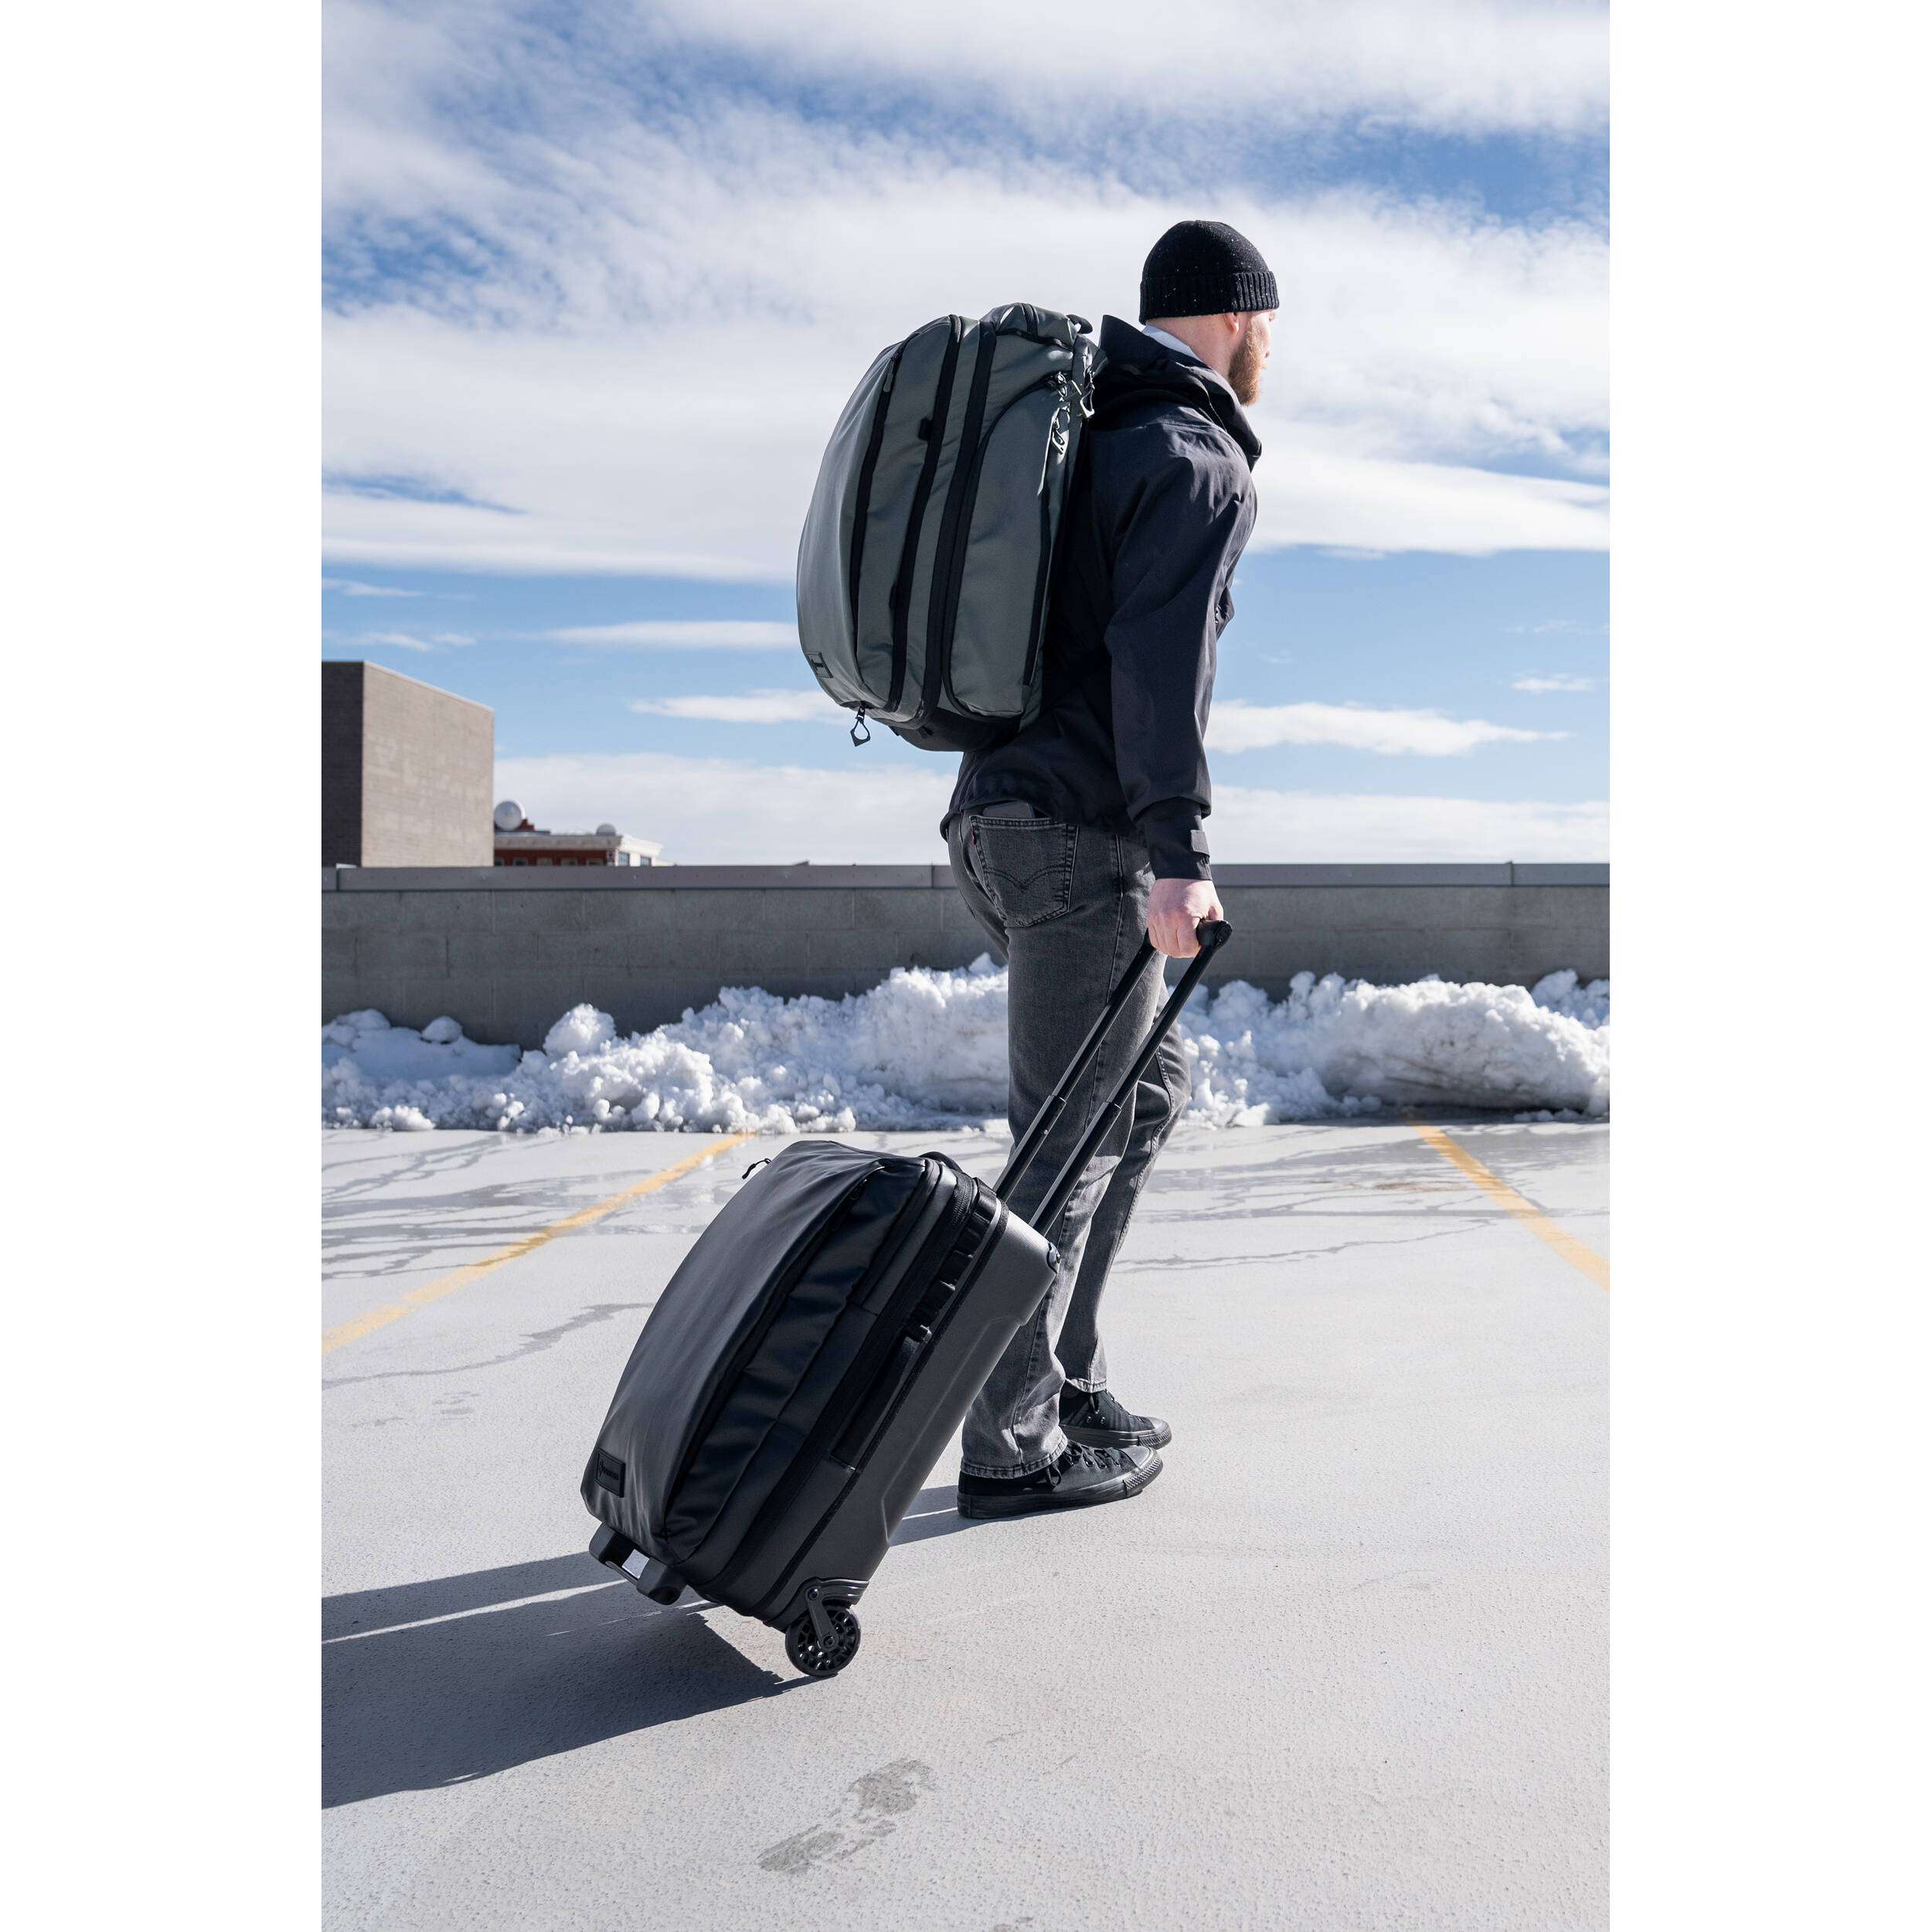 WANDRD Transit Carry-On Roller Bag  - 40L - Black - Essential + Bundle